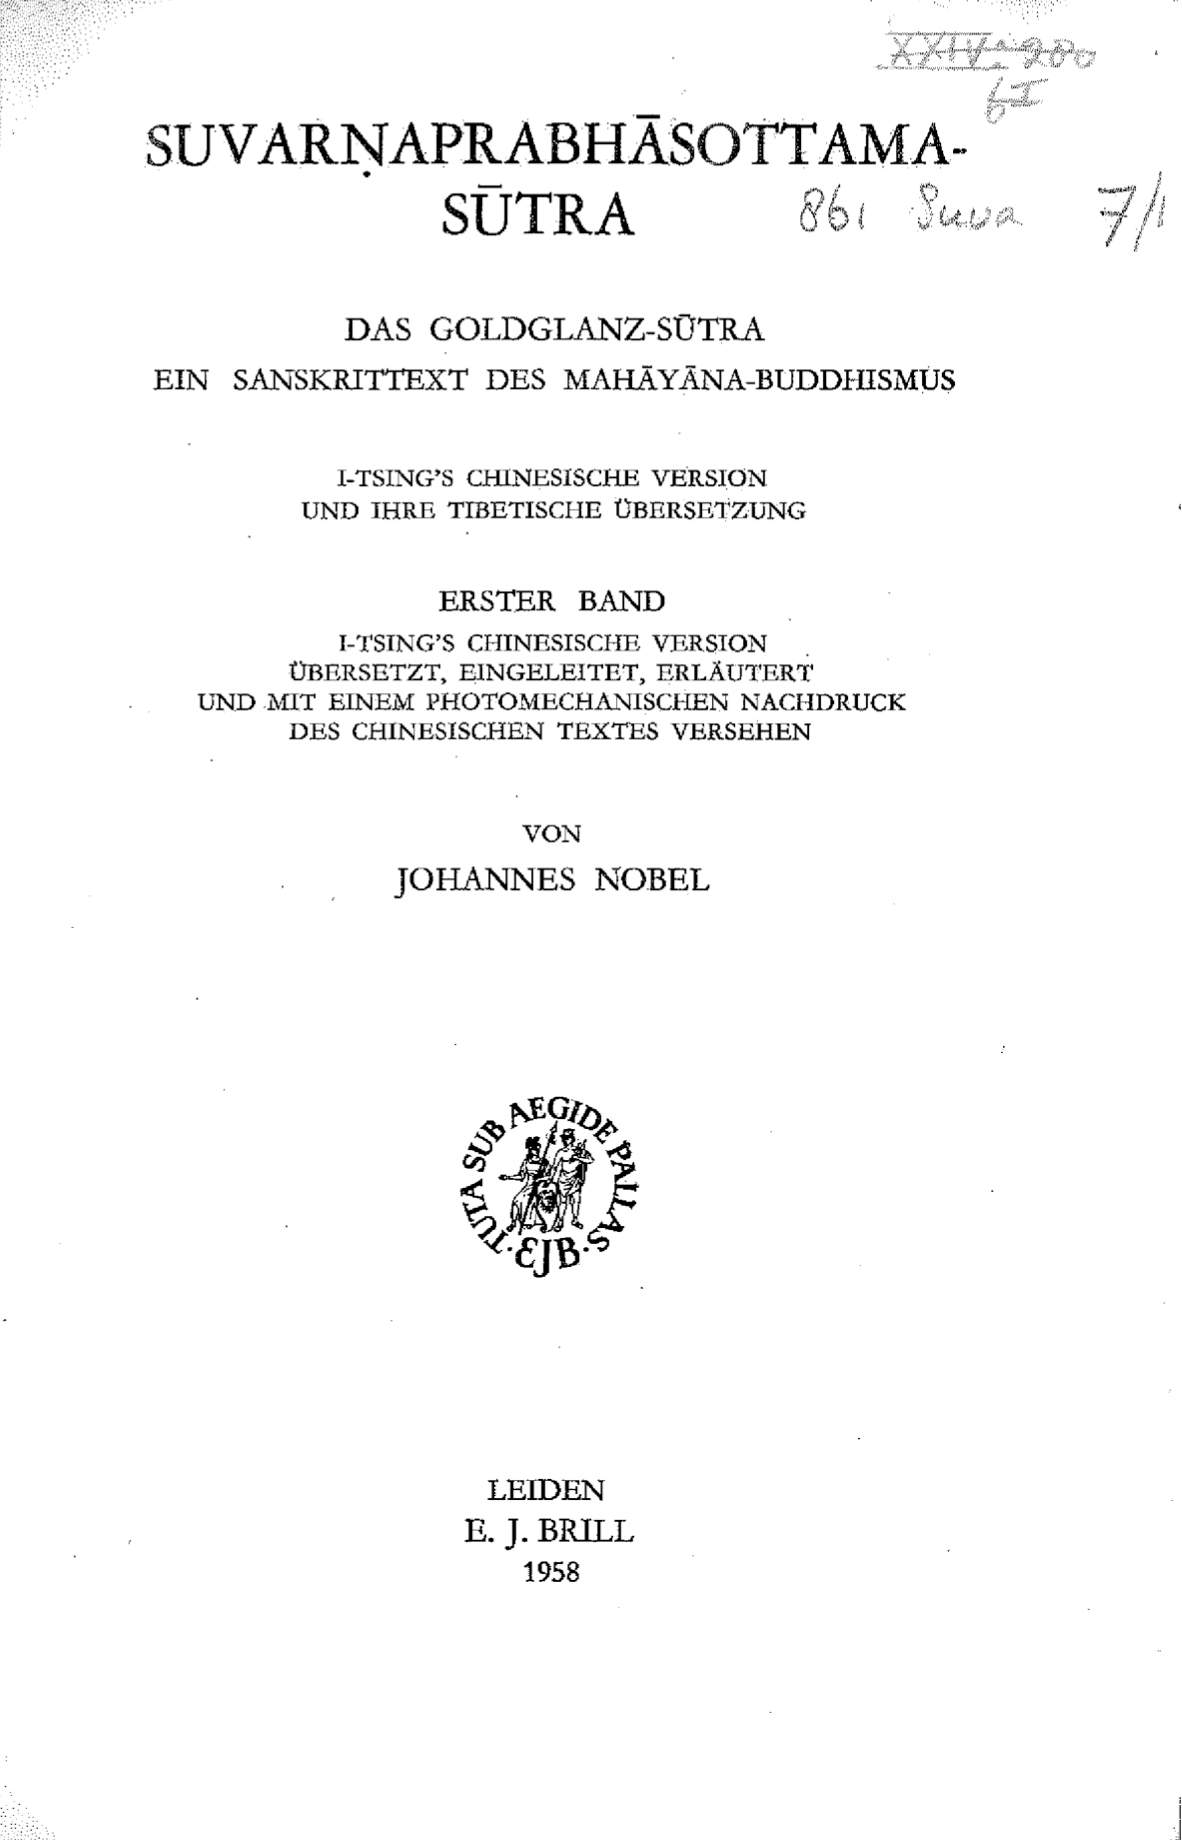 Suvarṇaprabhāsottamasūtra Nobel Vol. 1-front.jpg